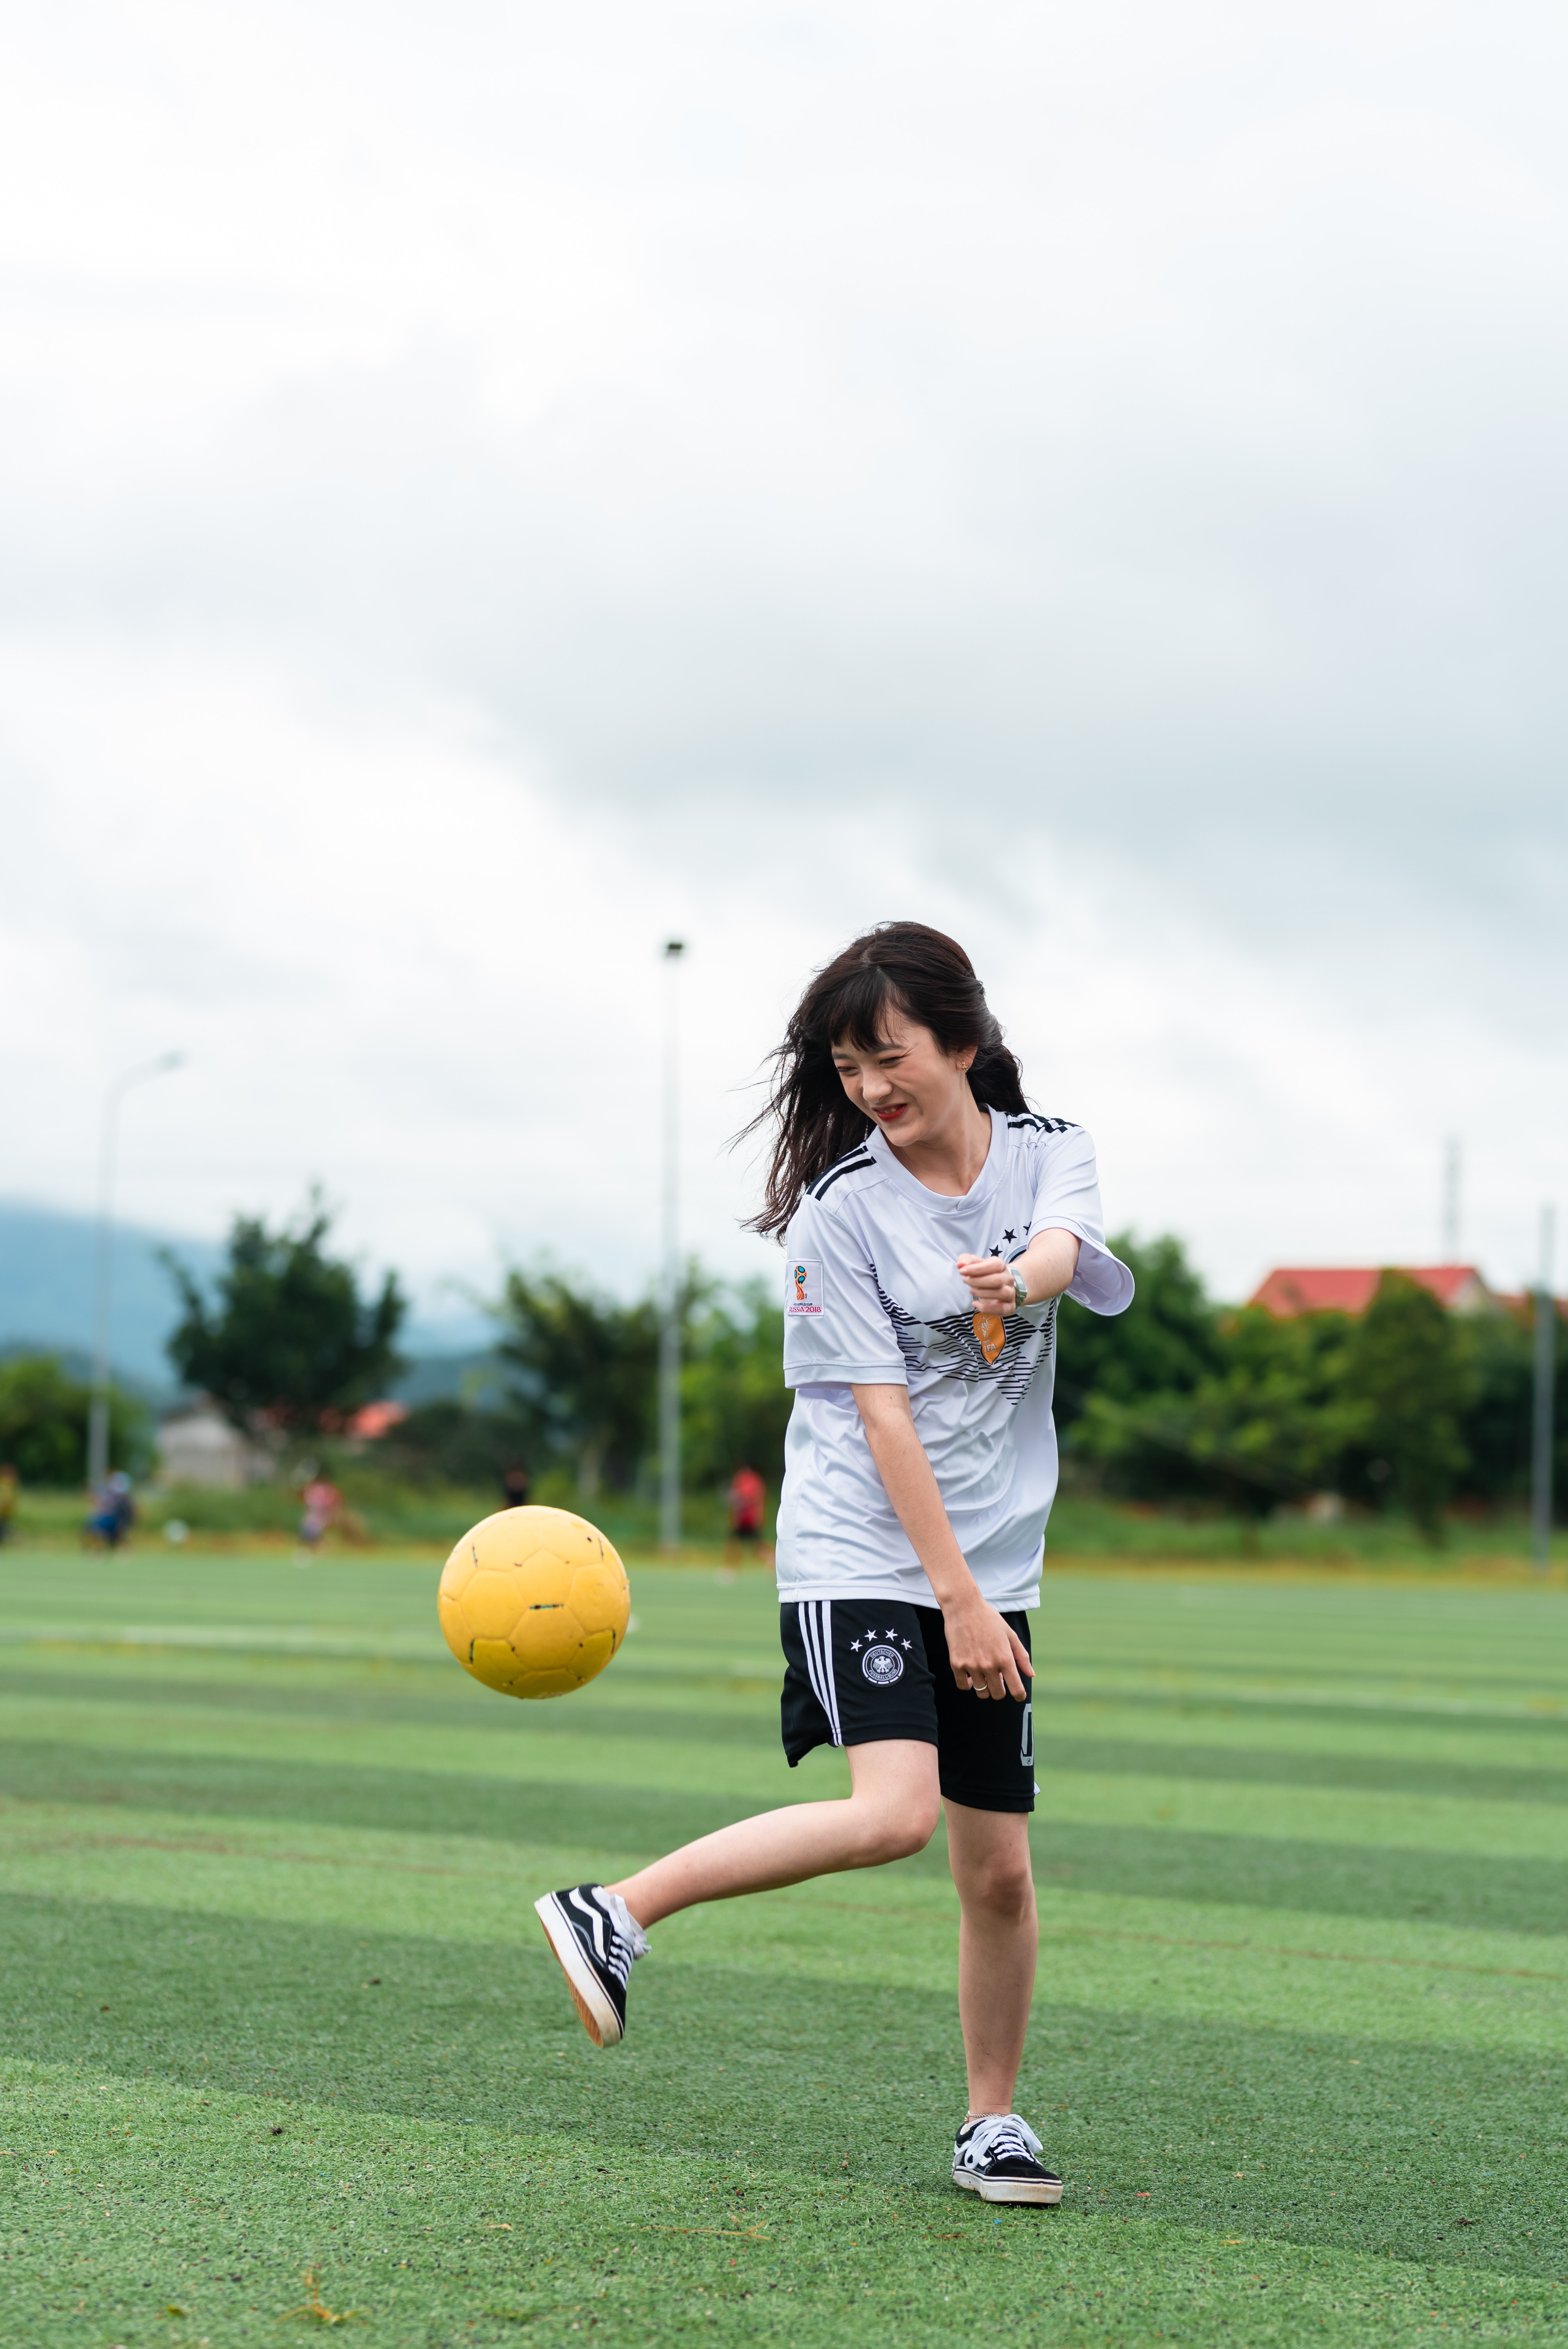 Chica pateando una pelota en un campo de fútbol